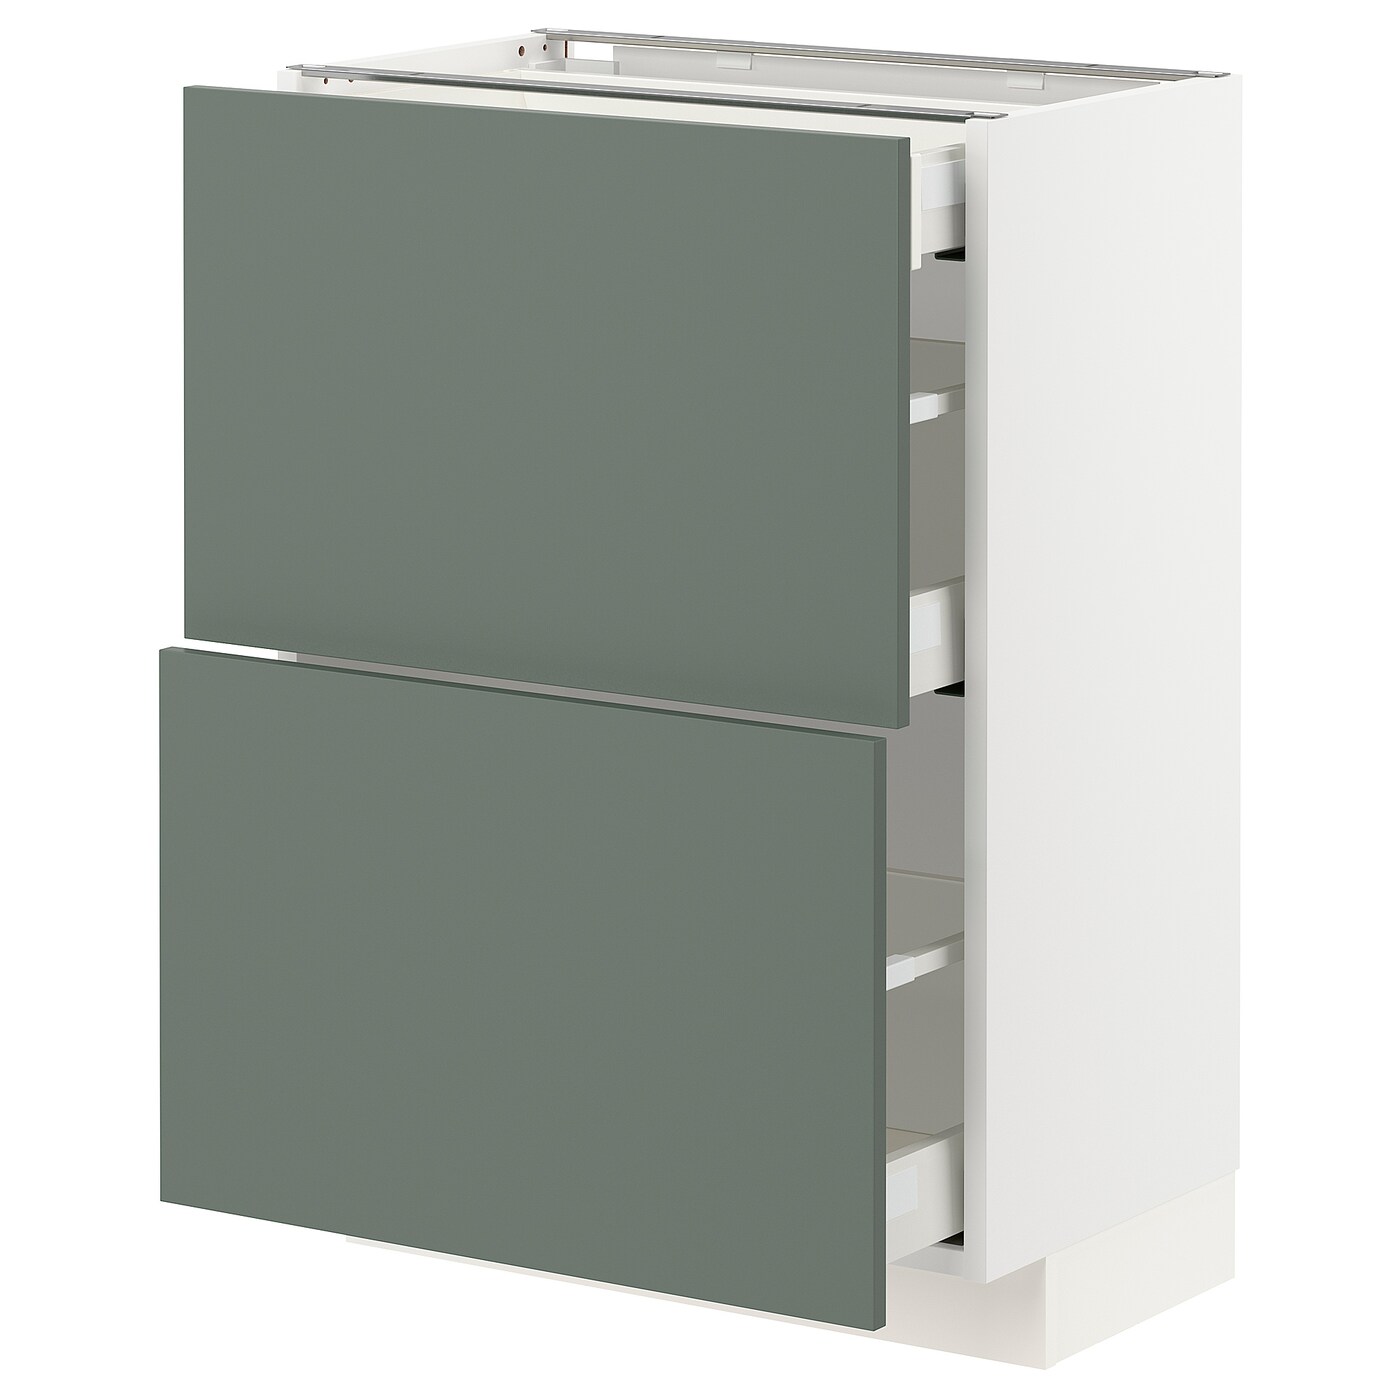 Напольный кухонный шкаф  - IKEA METOD MAXIMERA, 88x39,2x60см, белый/серый, МЕТОД МАКСИМЕРА ИКЕА